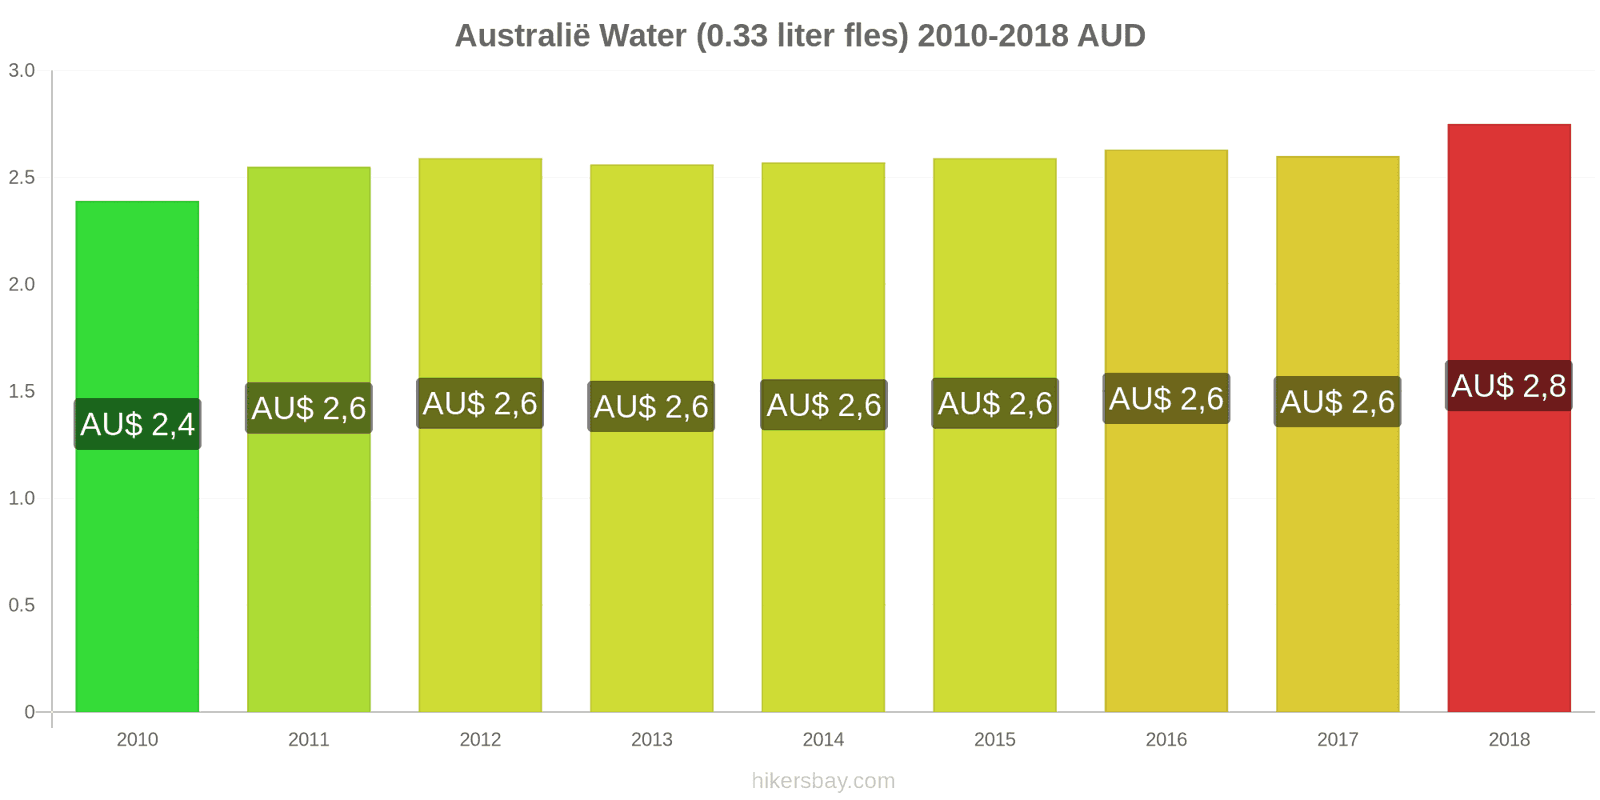 Australië prijswijzigingen Water (0.33 liter fles) hikersbay.com